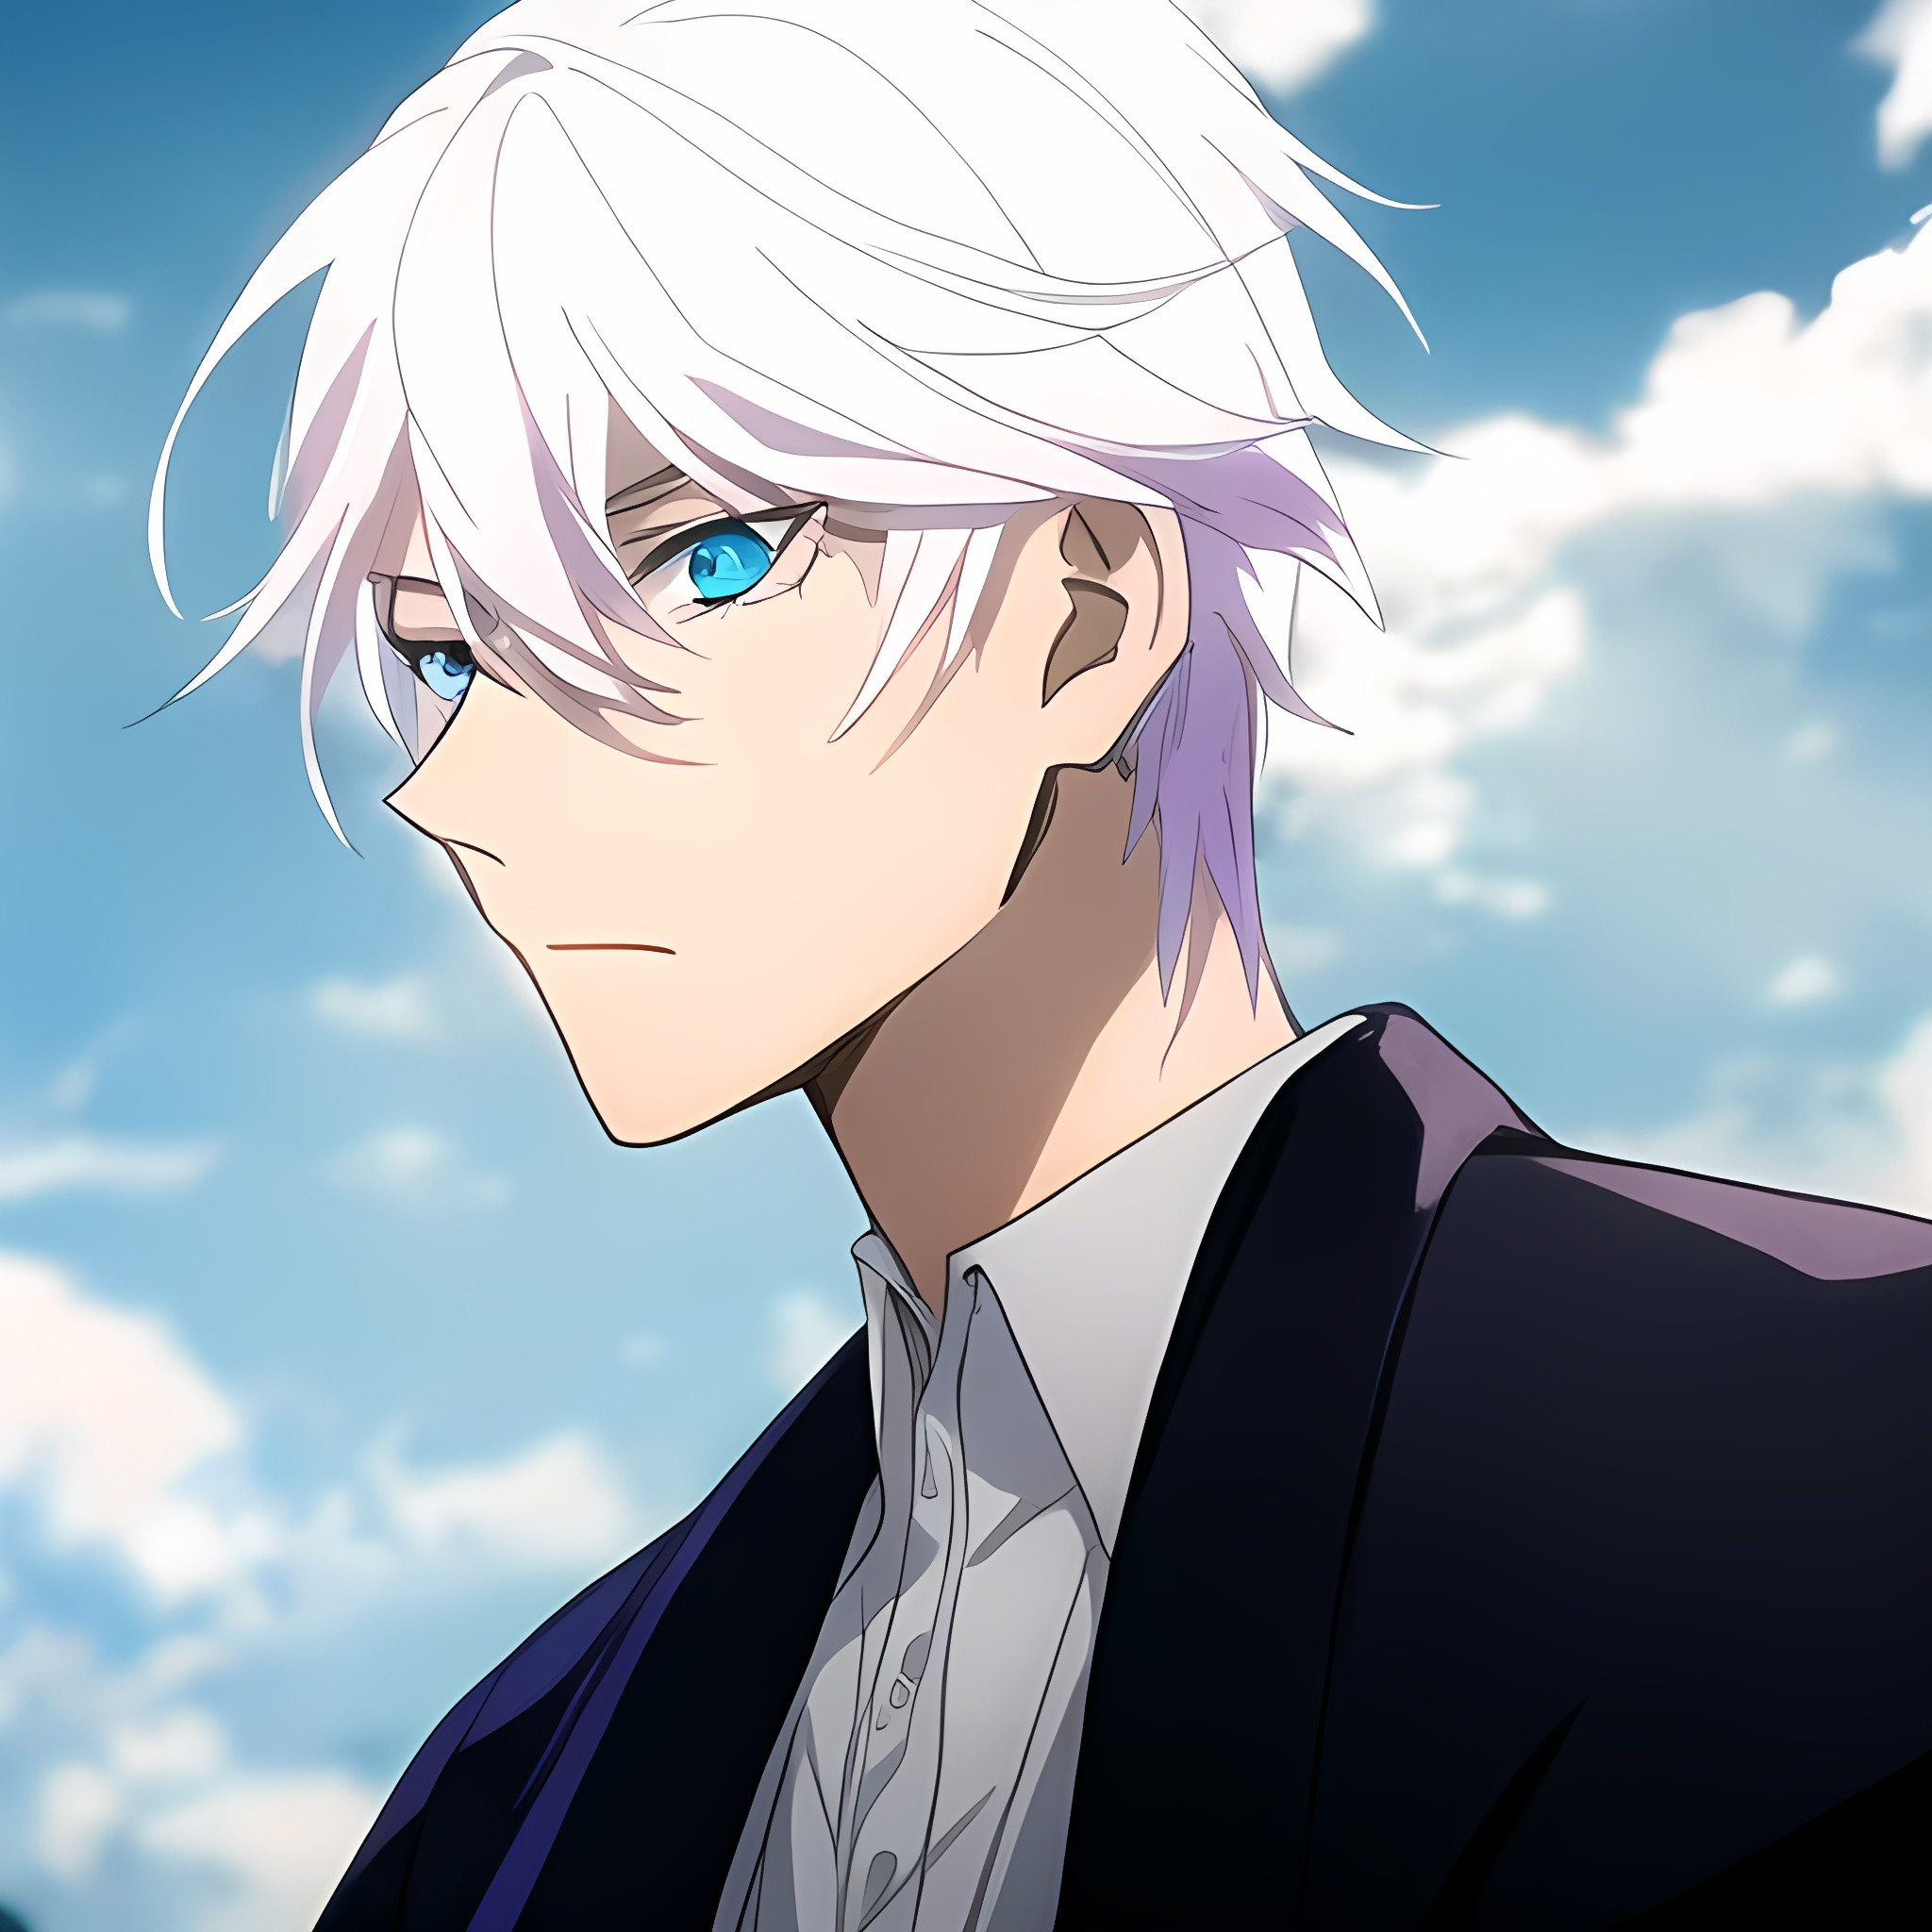 Anime boy, silver hair,cityscape | OpenArt